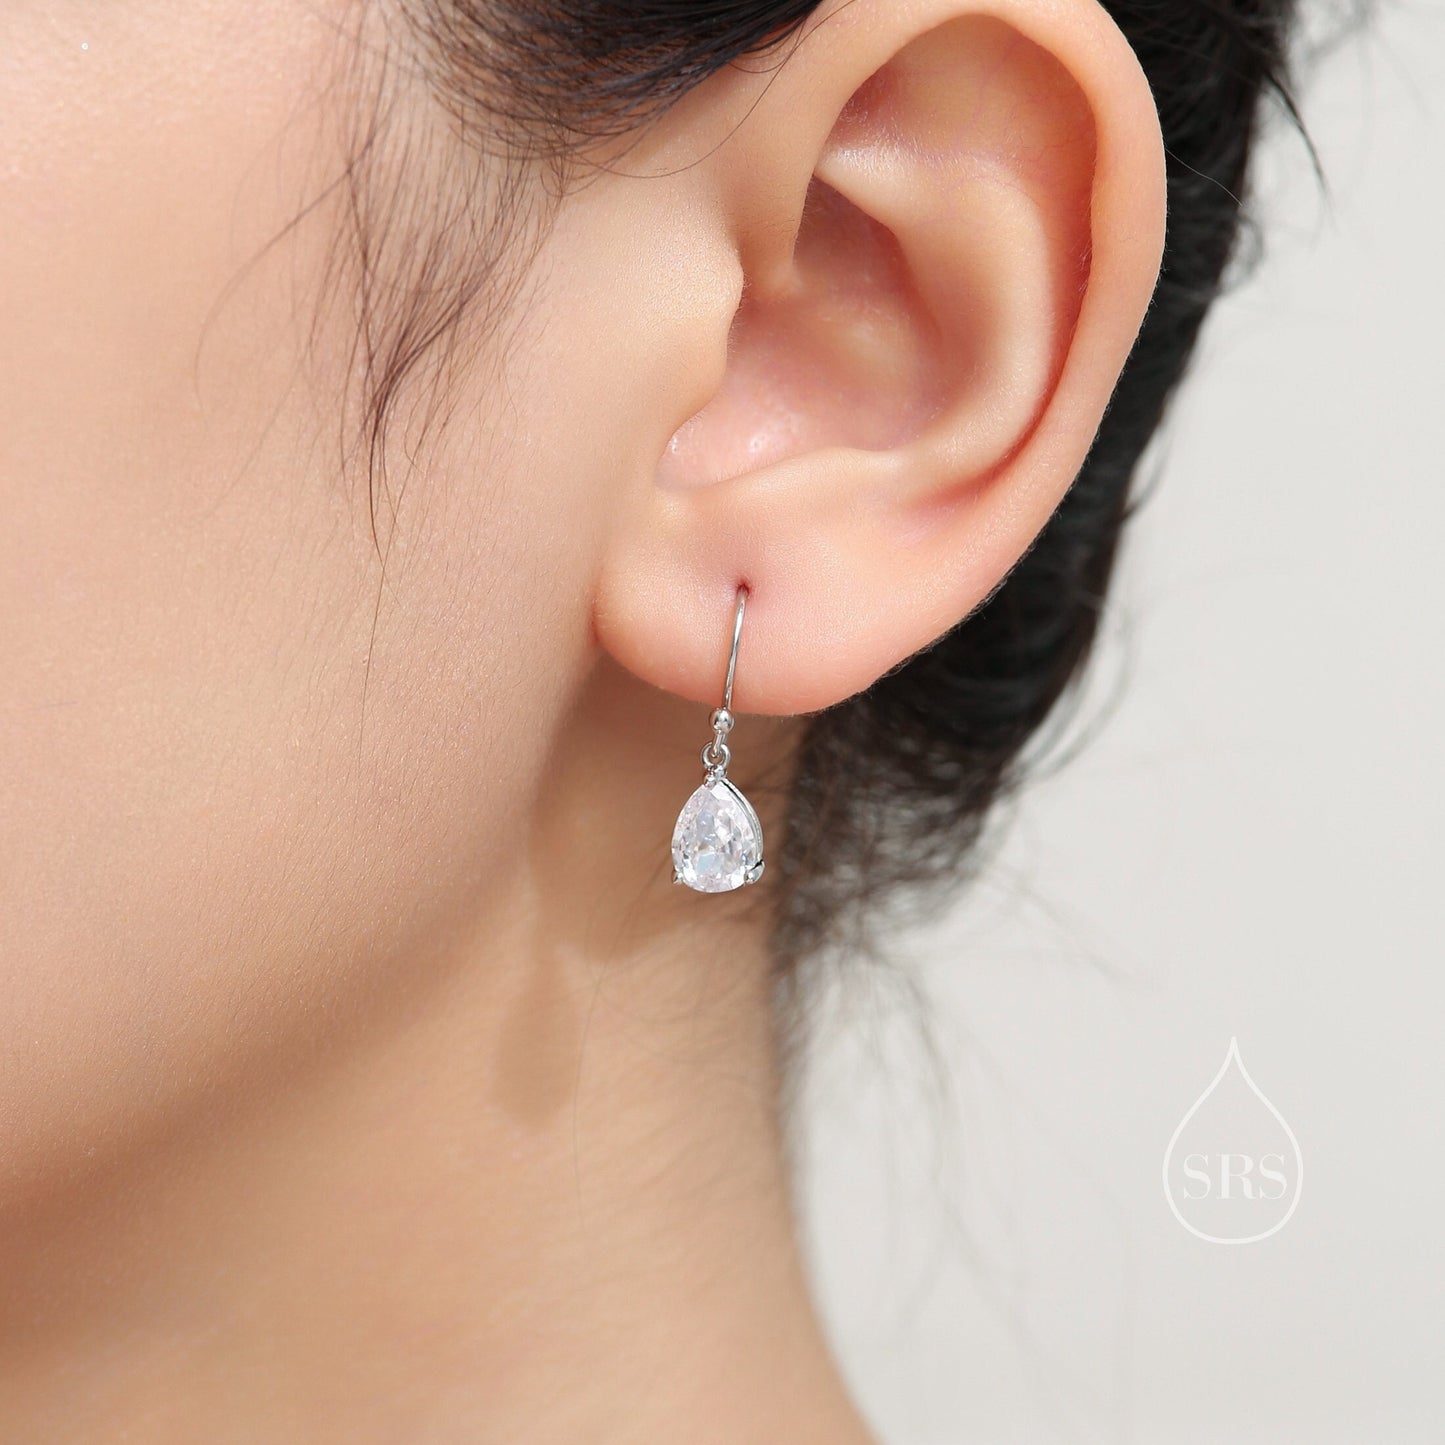 Pear Cut CZ Huggie Drop Earrings in Sterling Silver, Silver or Gold, Minimalist Droplet Dangle Earrings, Drop Earrings